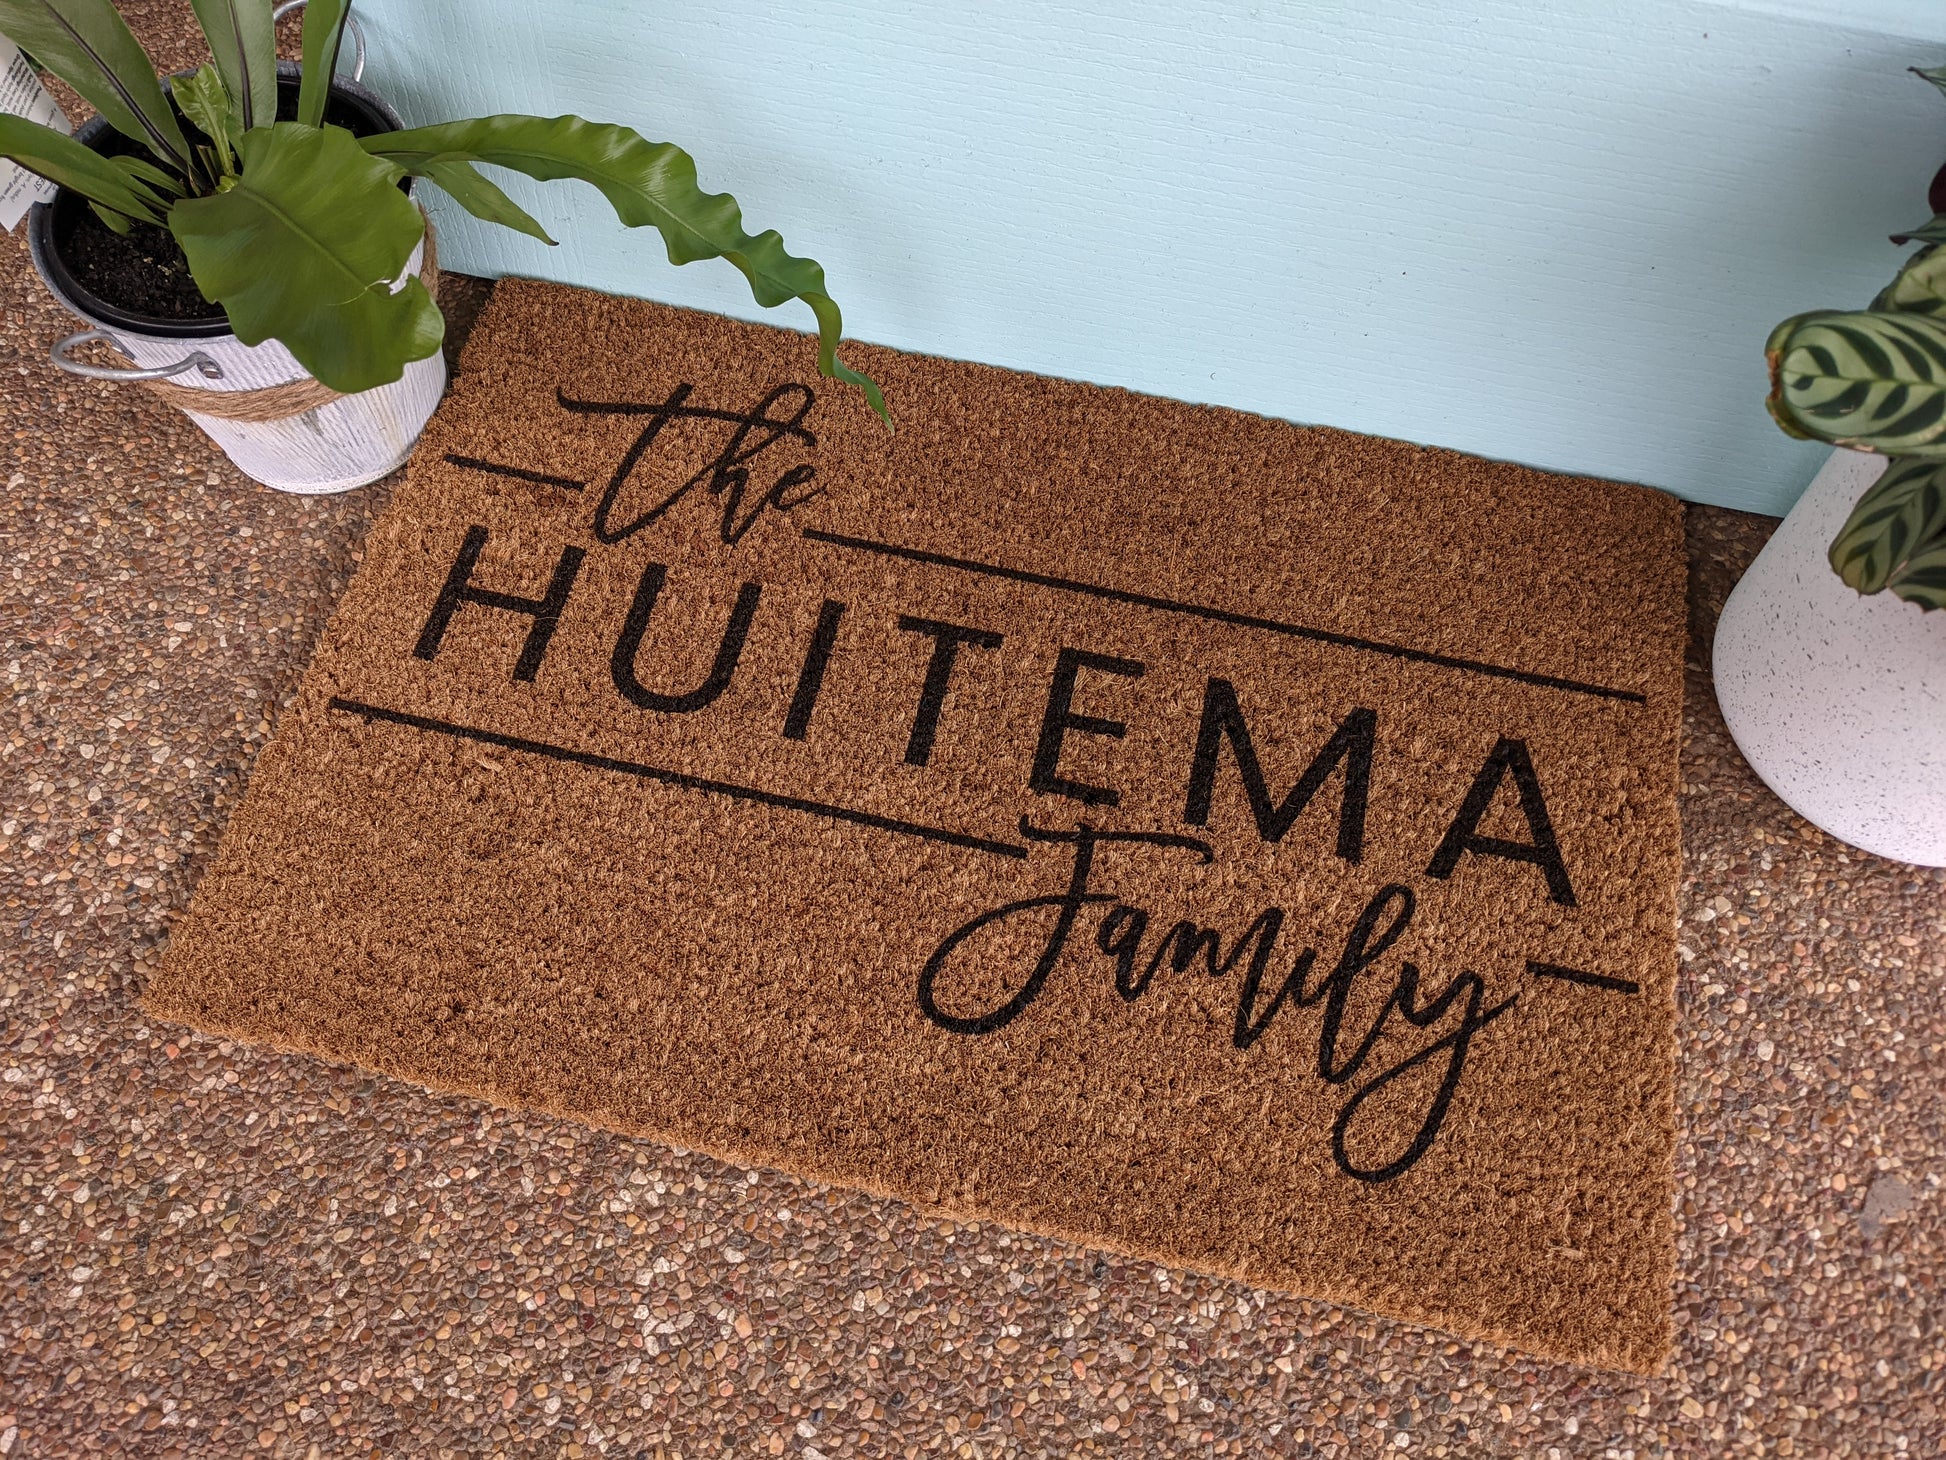 The family name Personalised Door mat - Personalised Doormat Australia